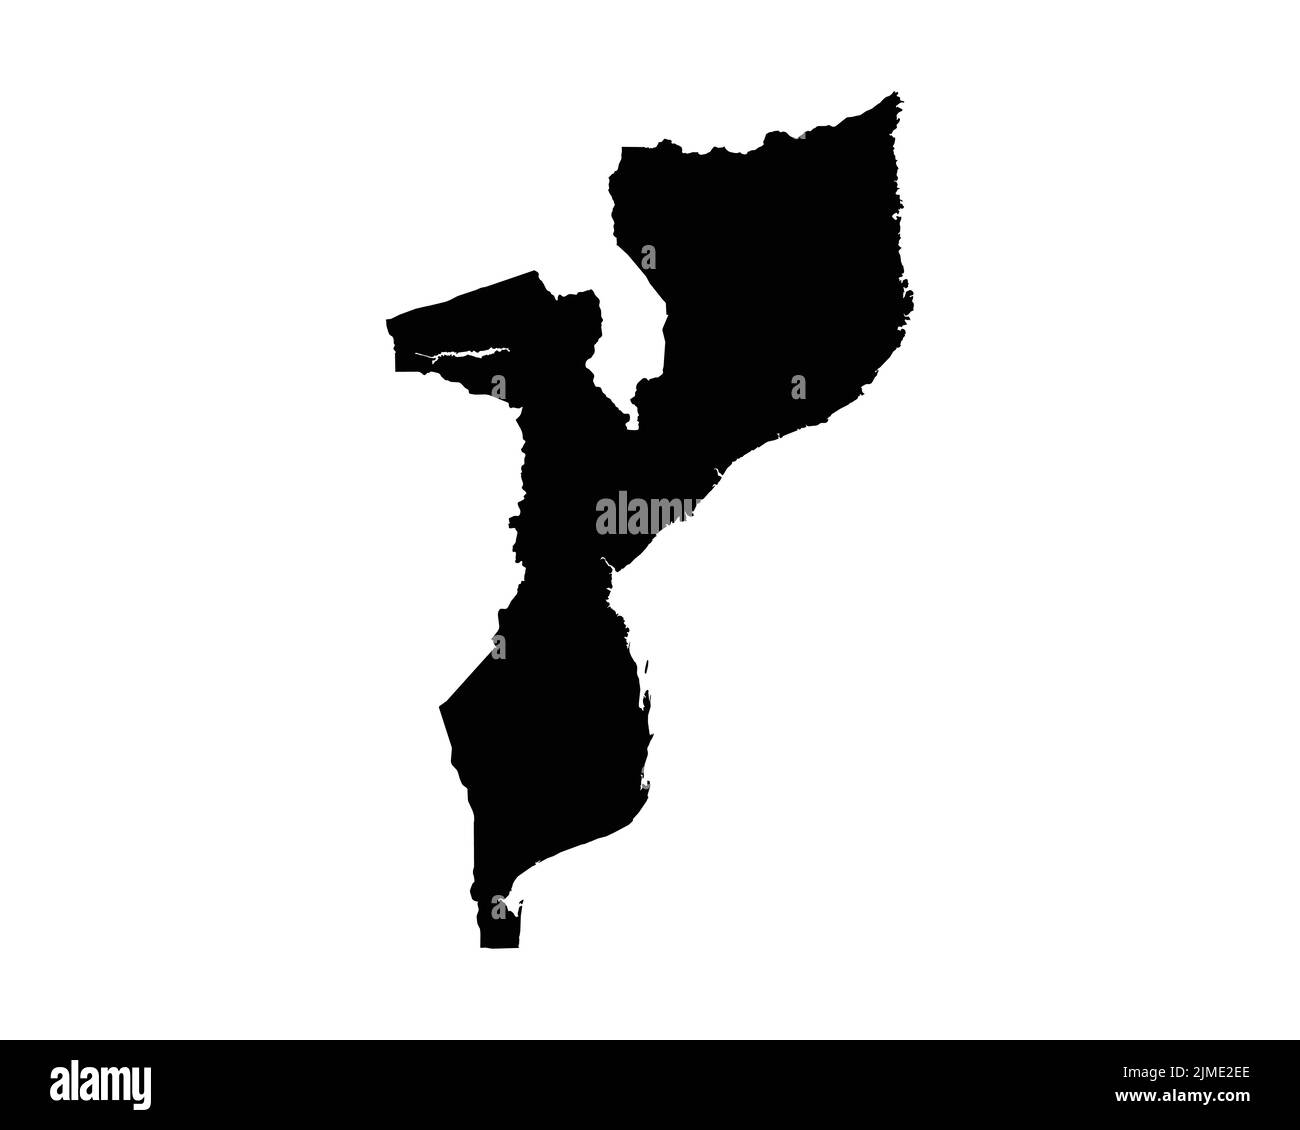 Mappa del Mozambico. Mappa del Paese mozambicano. Bianco e nero National Nation Outline Geografia Border Boundary Shape Territory Vector Illustration EPS clip Illustrazione Vettoriale